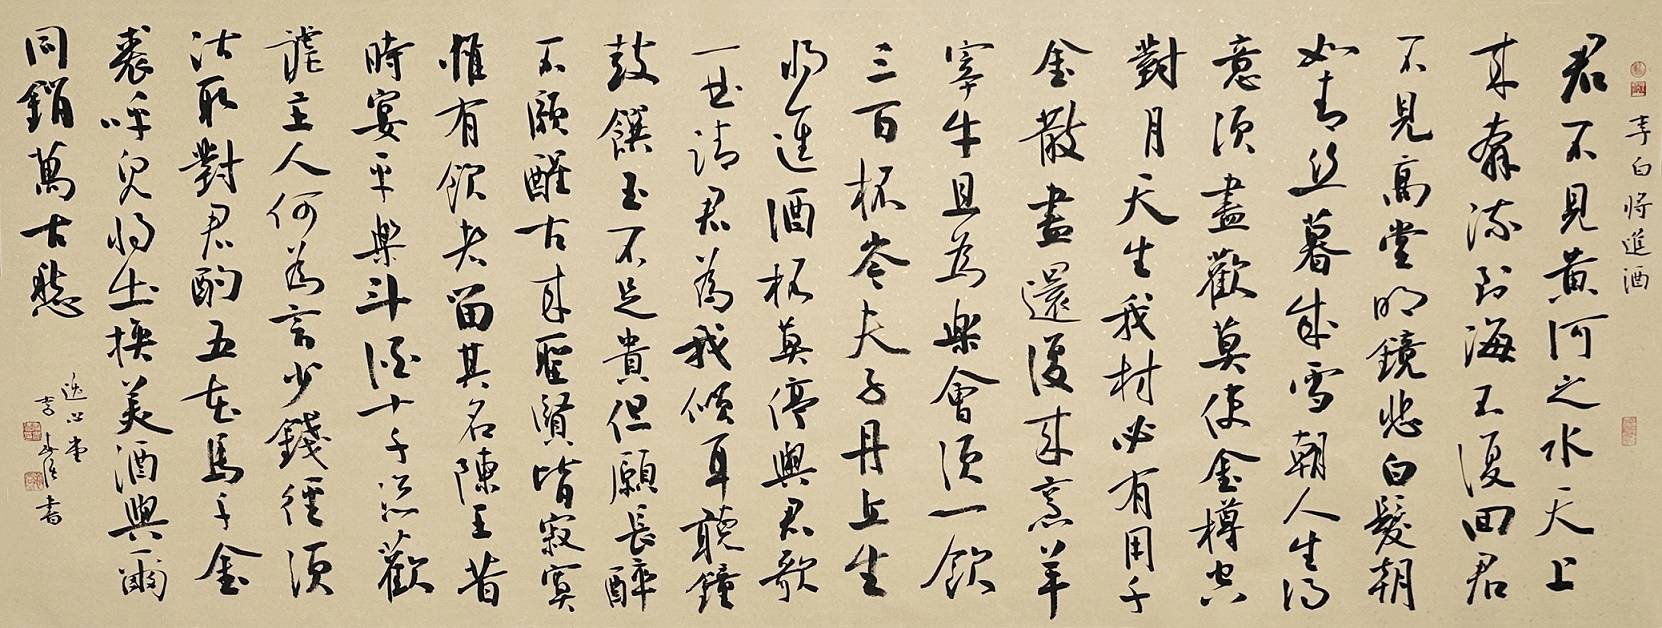 李春强作品《将进酒》被中国国家博物馆收藏